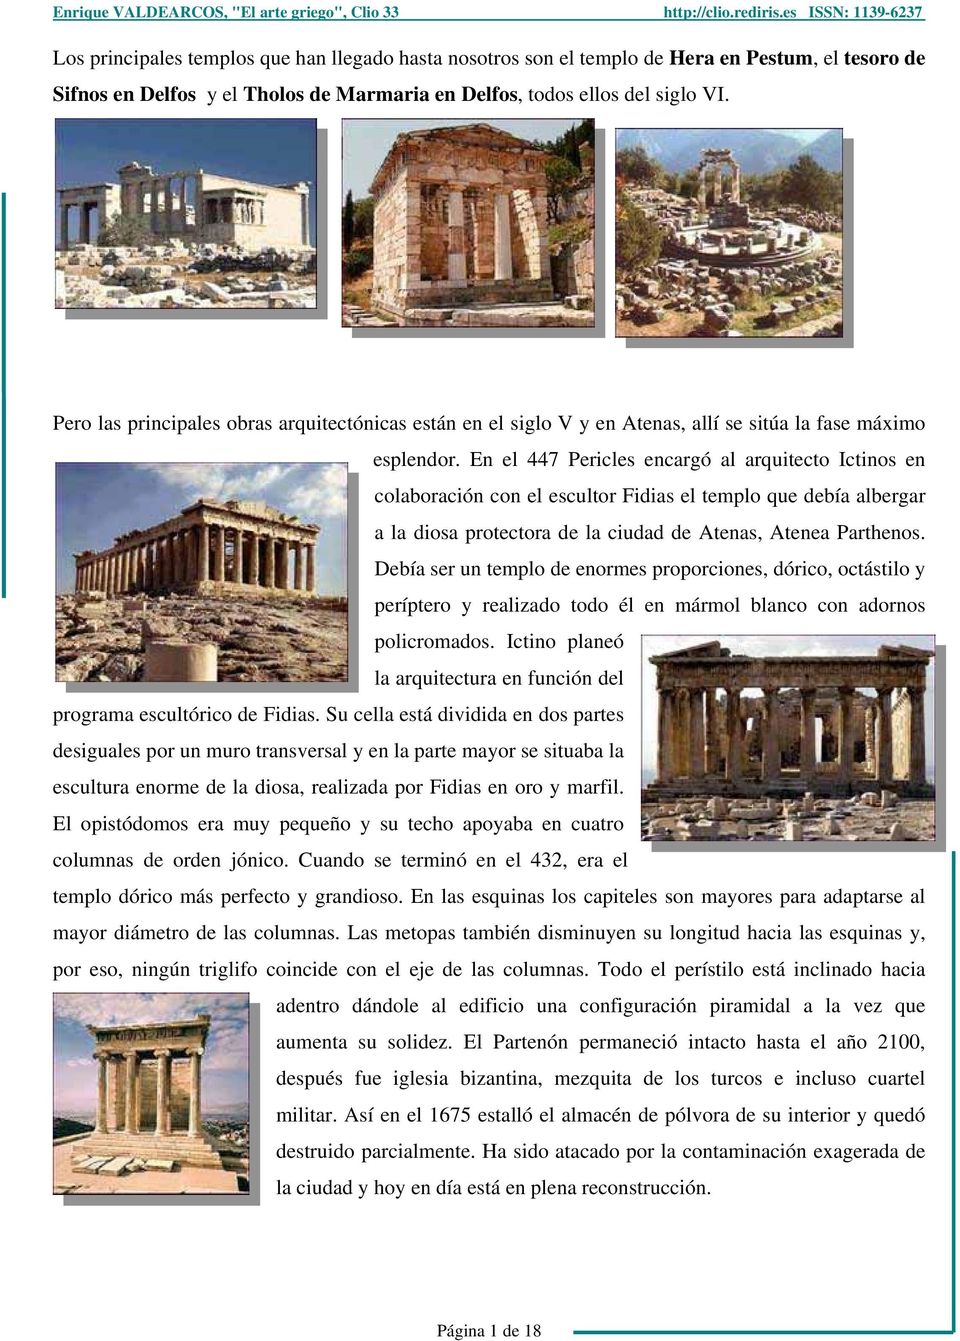 En el 447 Pericles encargó al arquitecto Ictinos en colaboración con el escultor Fidias el templo que debía albergar a la diosa protectora de la ciudad de Atenas, Atenea Parthenos.